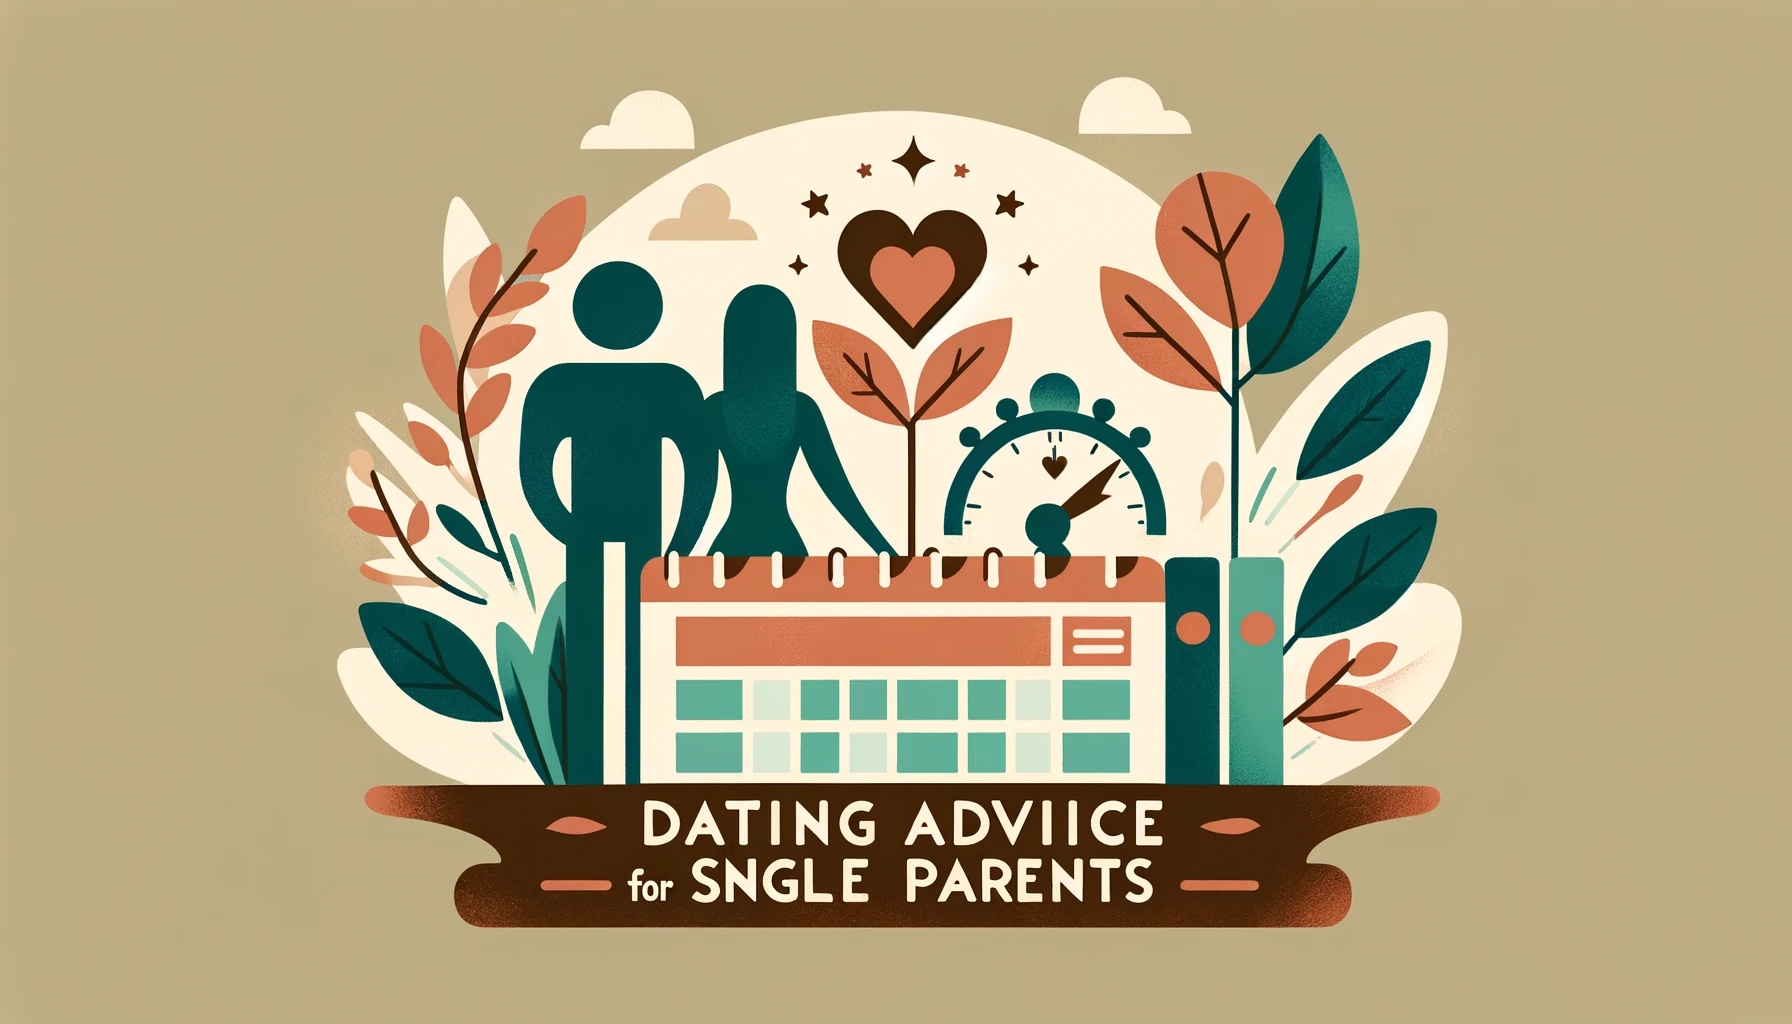 Miniaturka do artykułu o randkowaniu dla samotnych rodziców, z elementami jak sylwetka rodziny, serce, kalendarz, w łagodnych kolorach zieleni, błękitu, beżu.